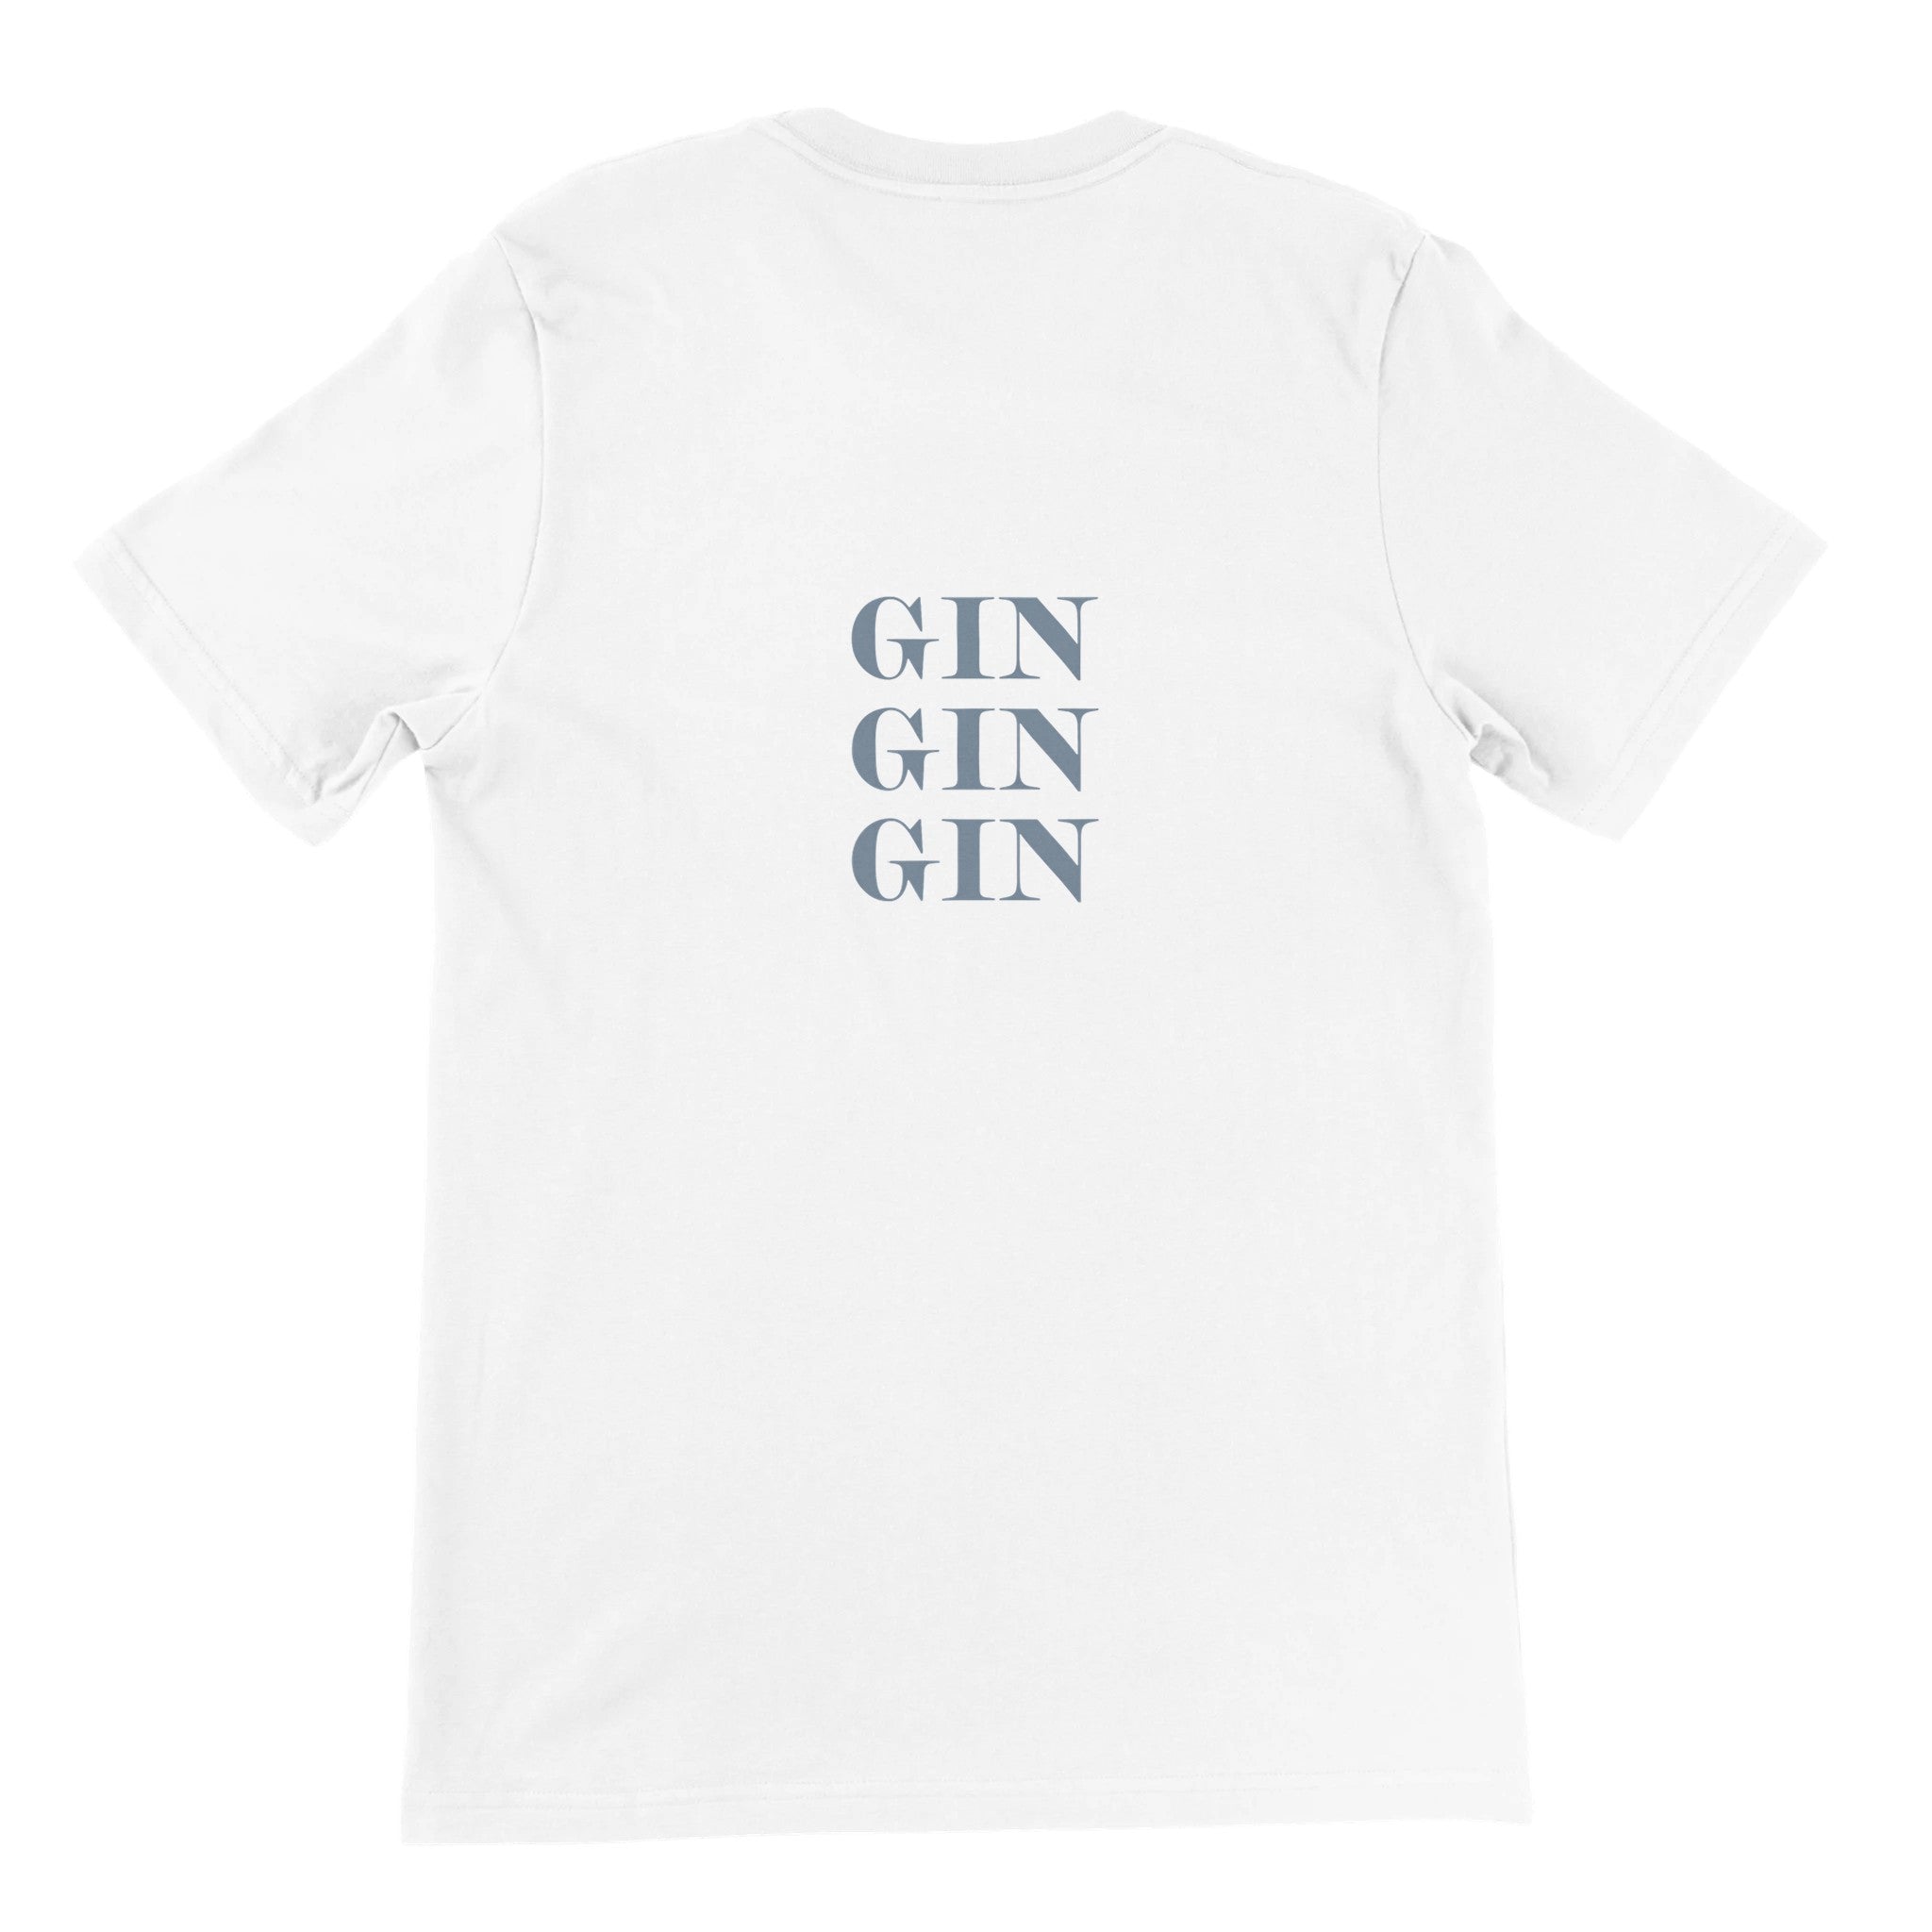 GIN GIN GIN Crewneck T-shirt